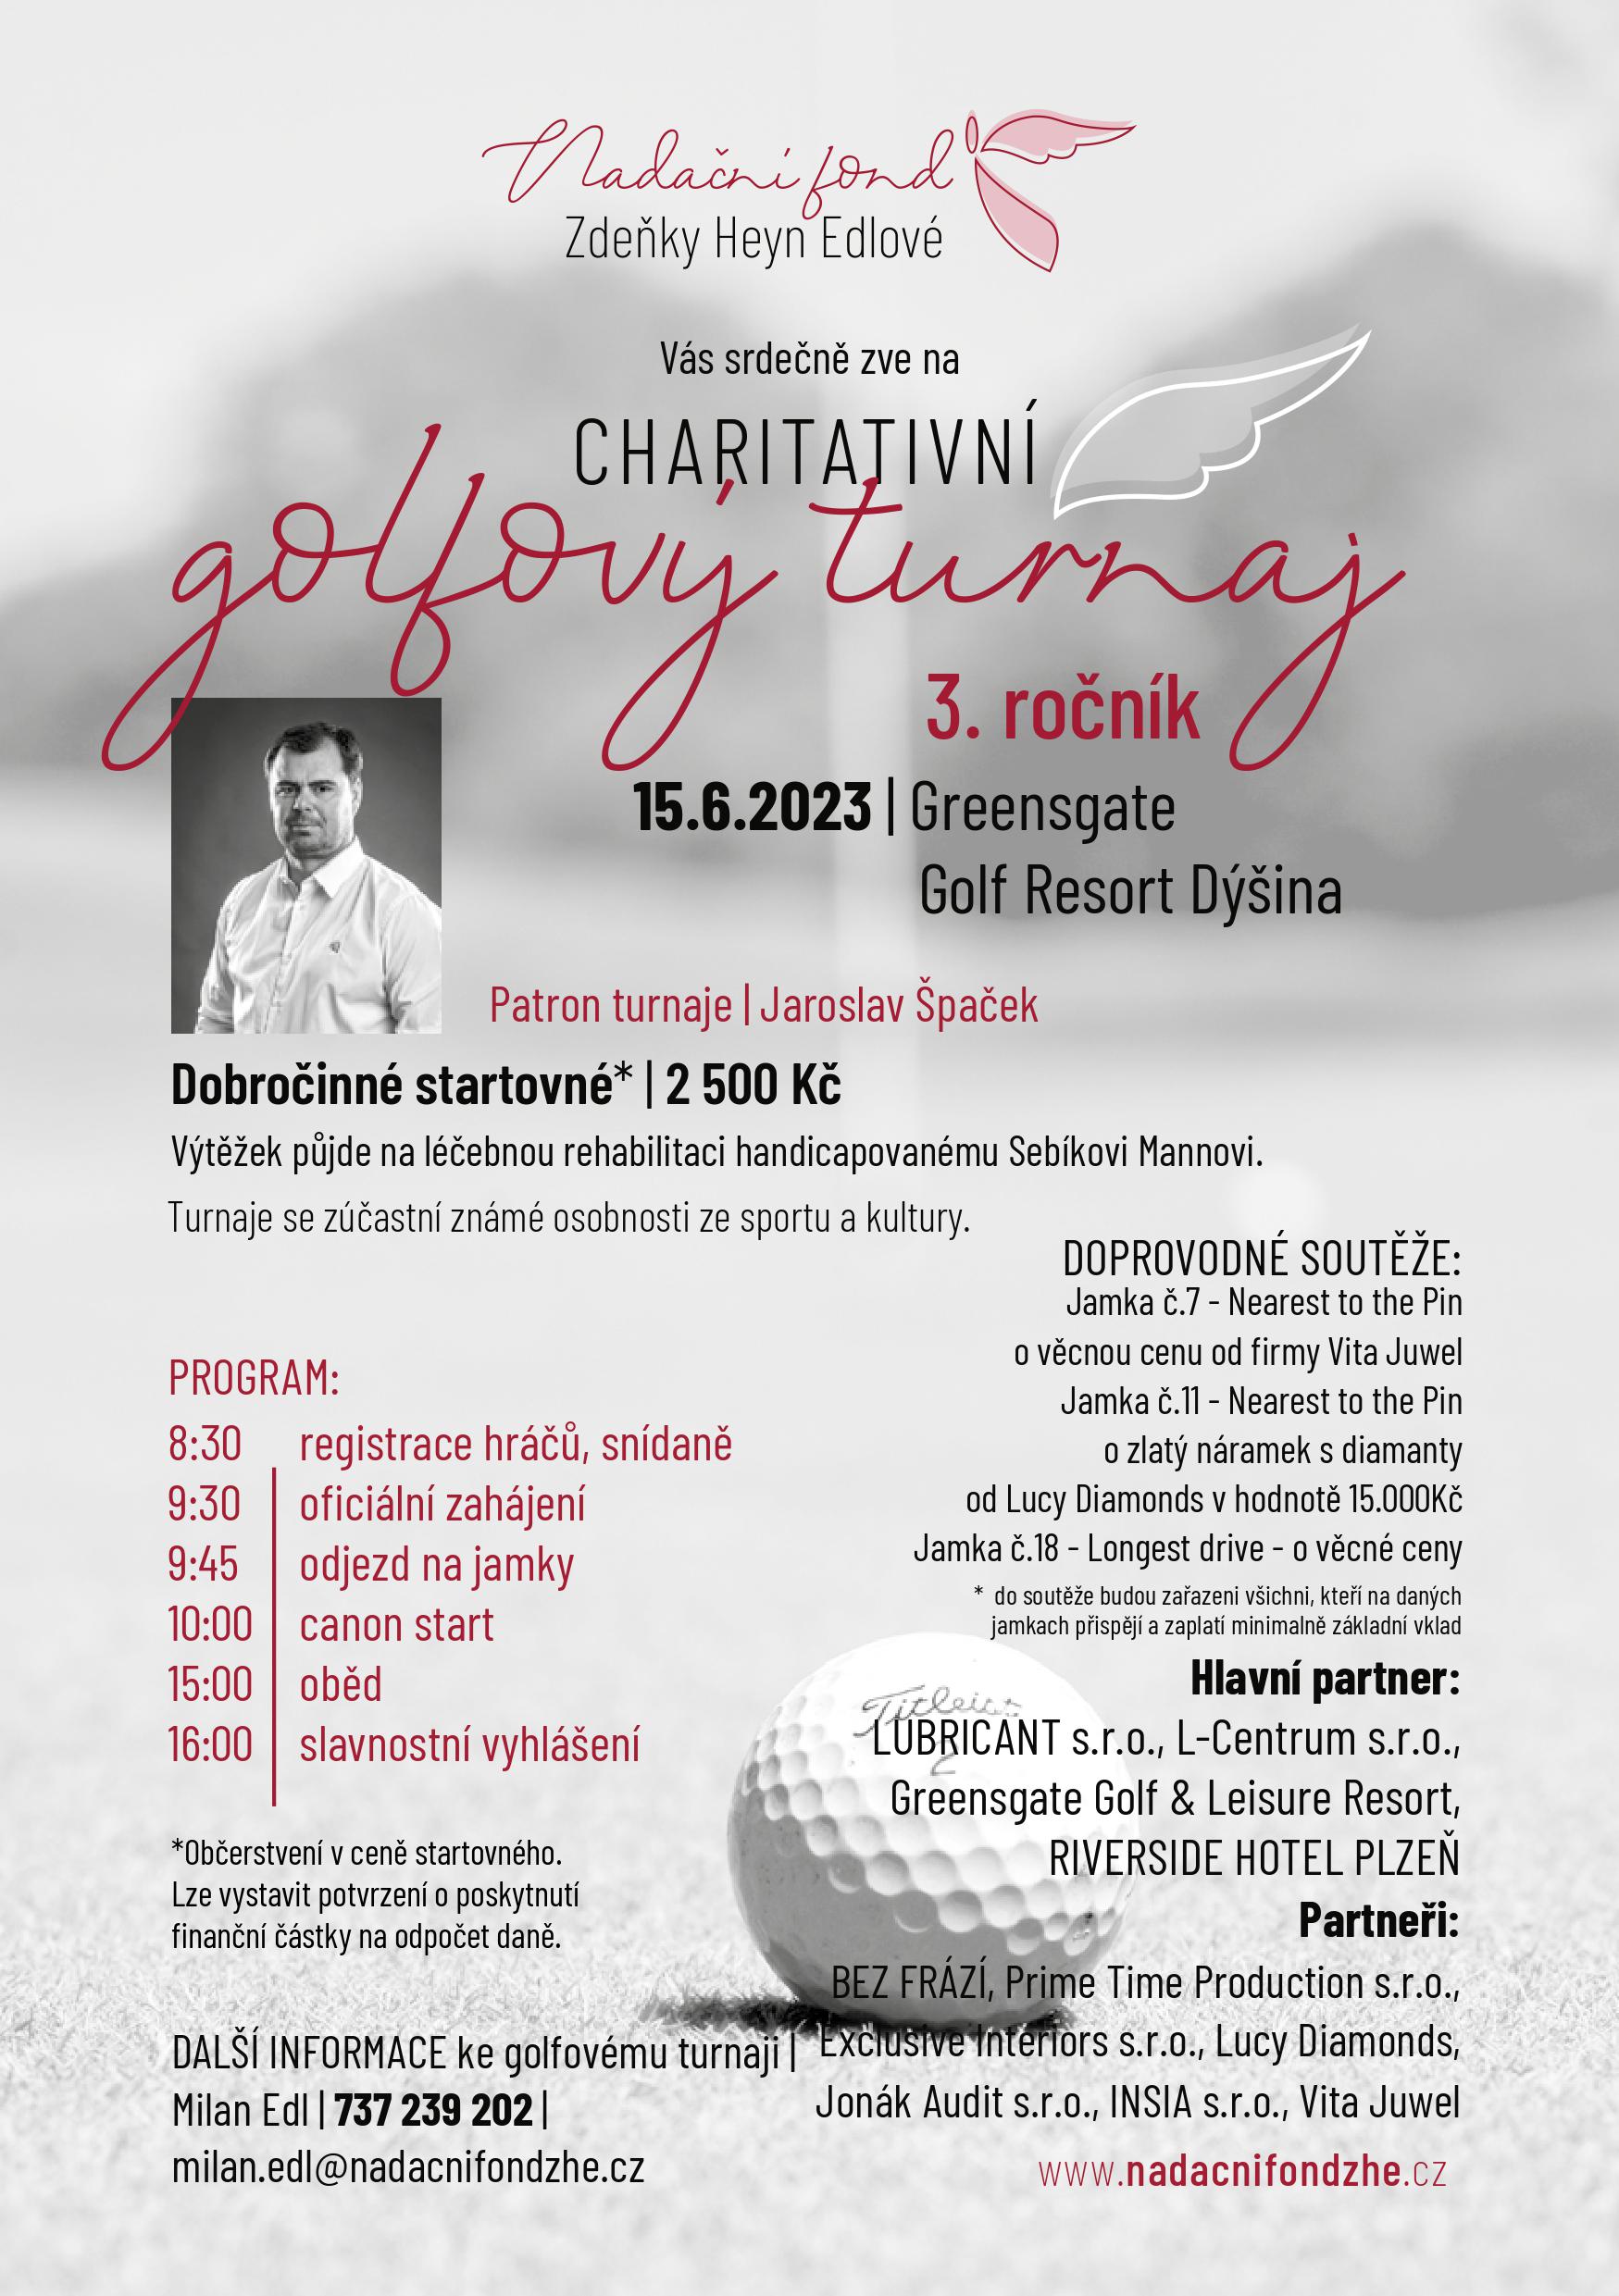 3.ročník charitativního golfového turnaje v resortu Dýšiná u Plzně 15.6.2023